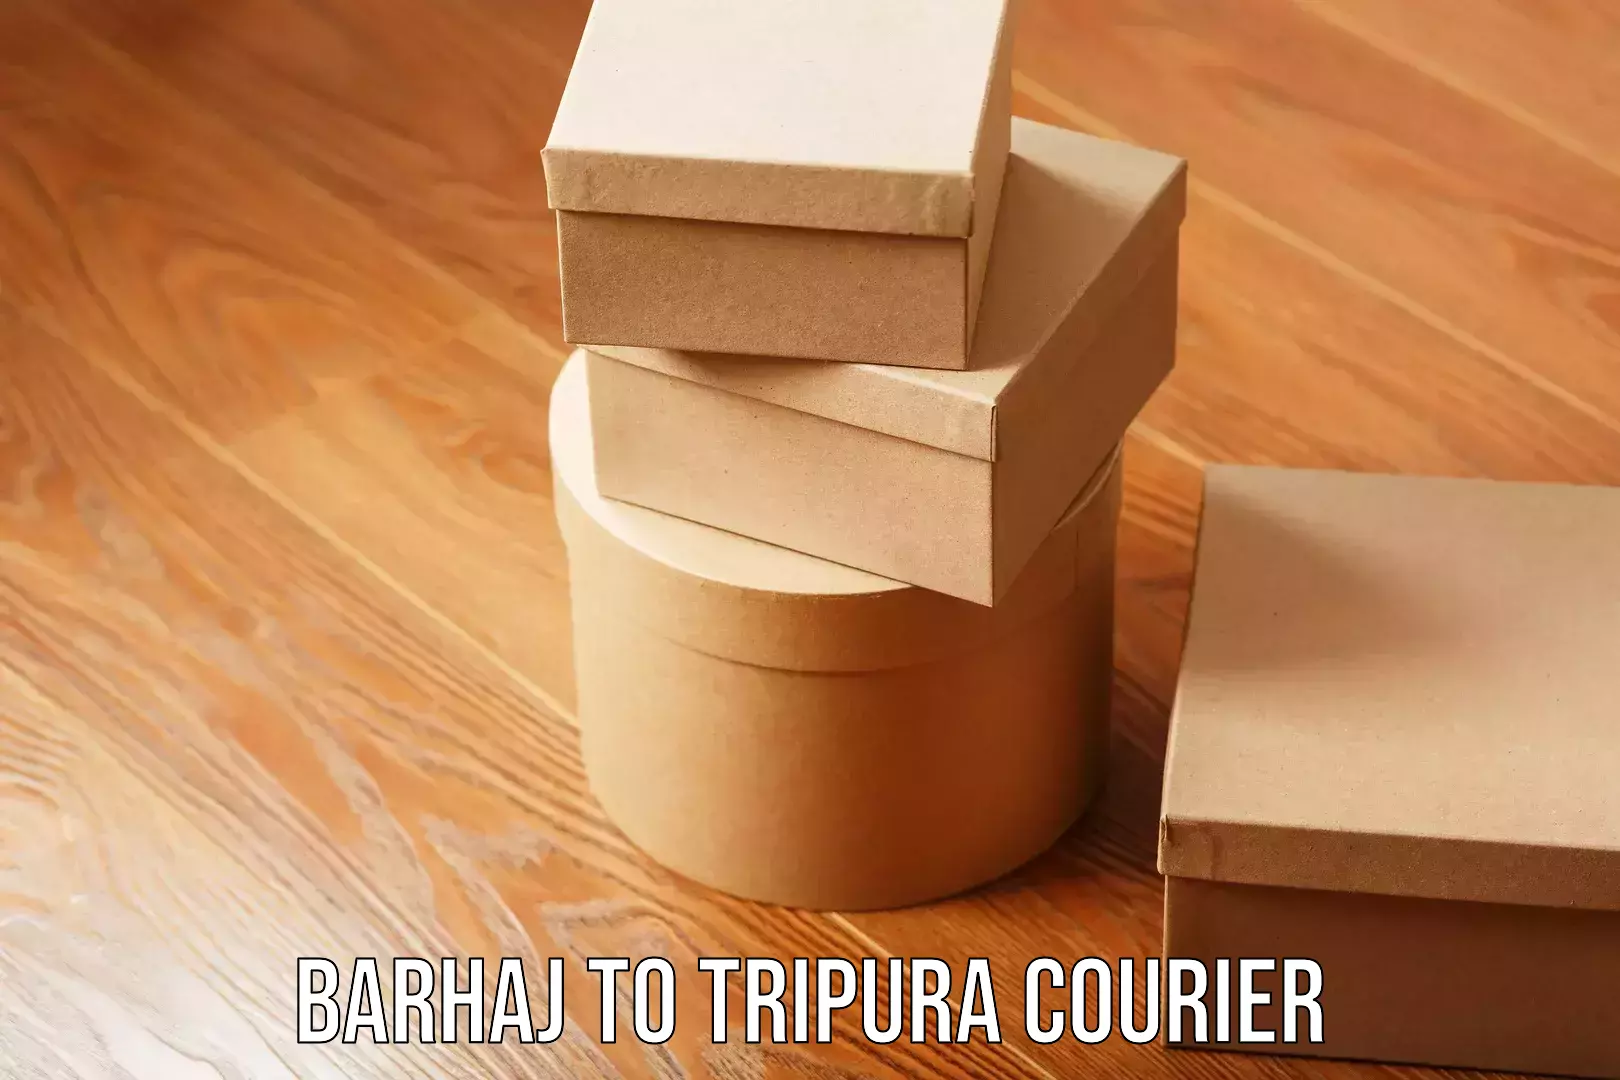 Smart logistics strategies Barhaj to Tripura